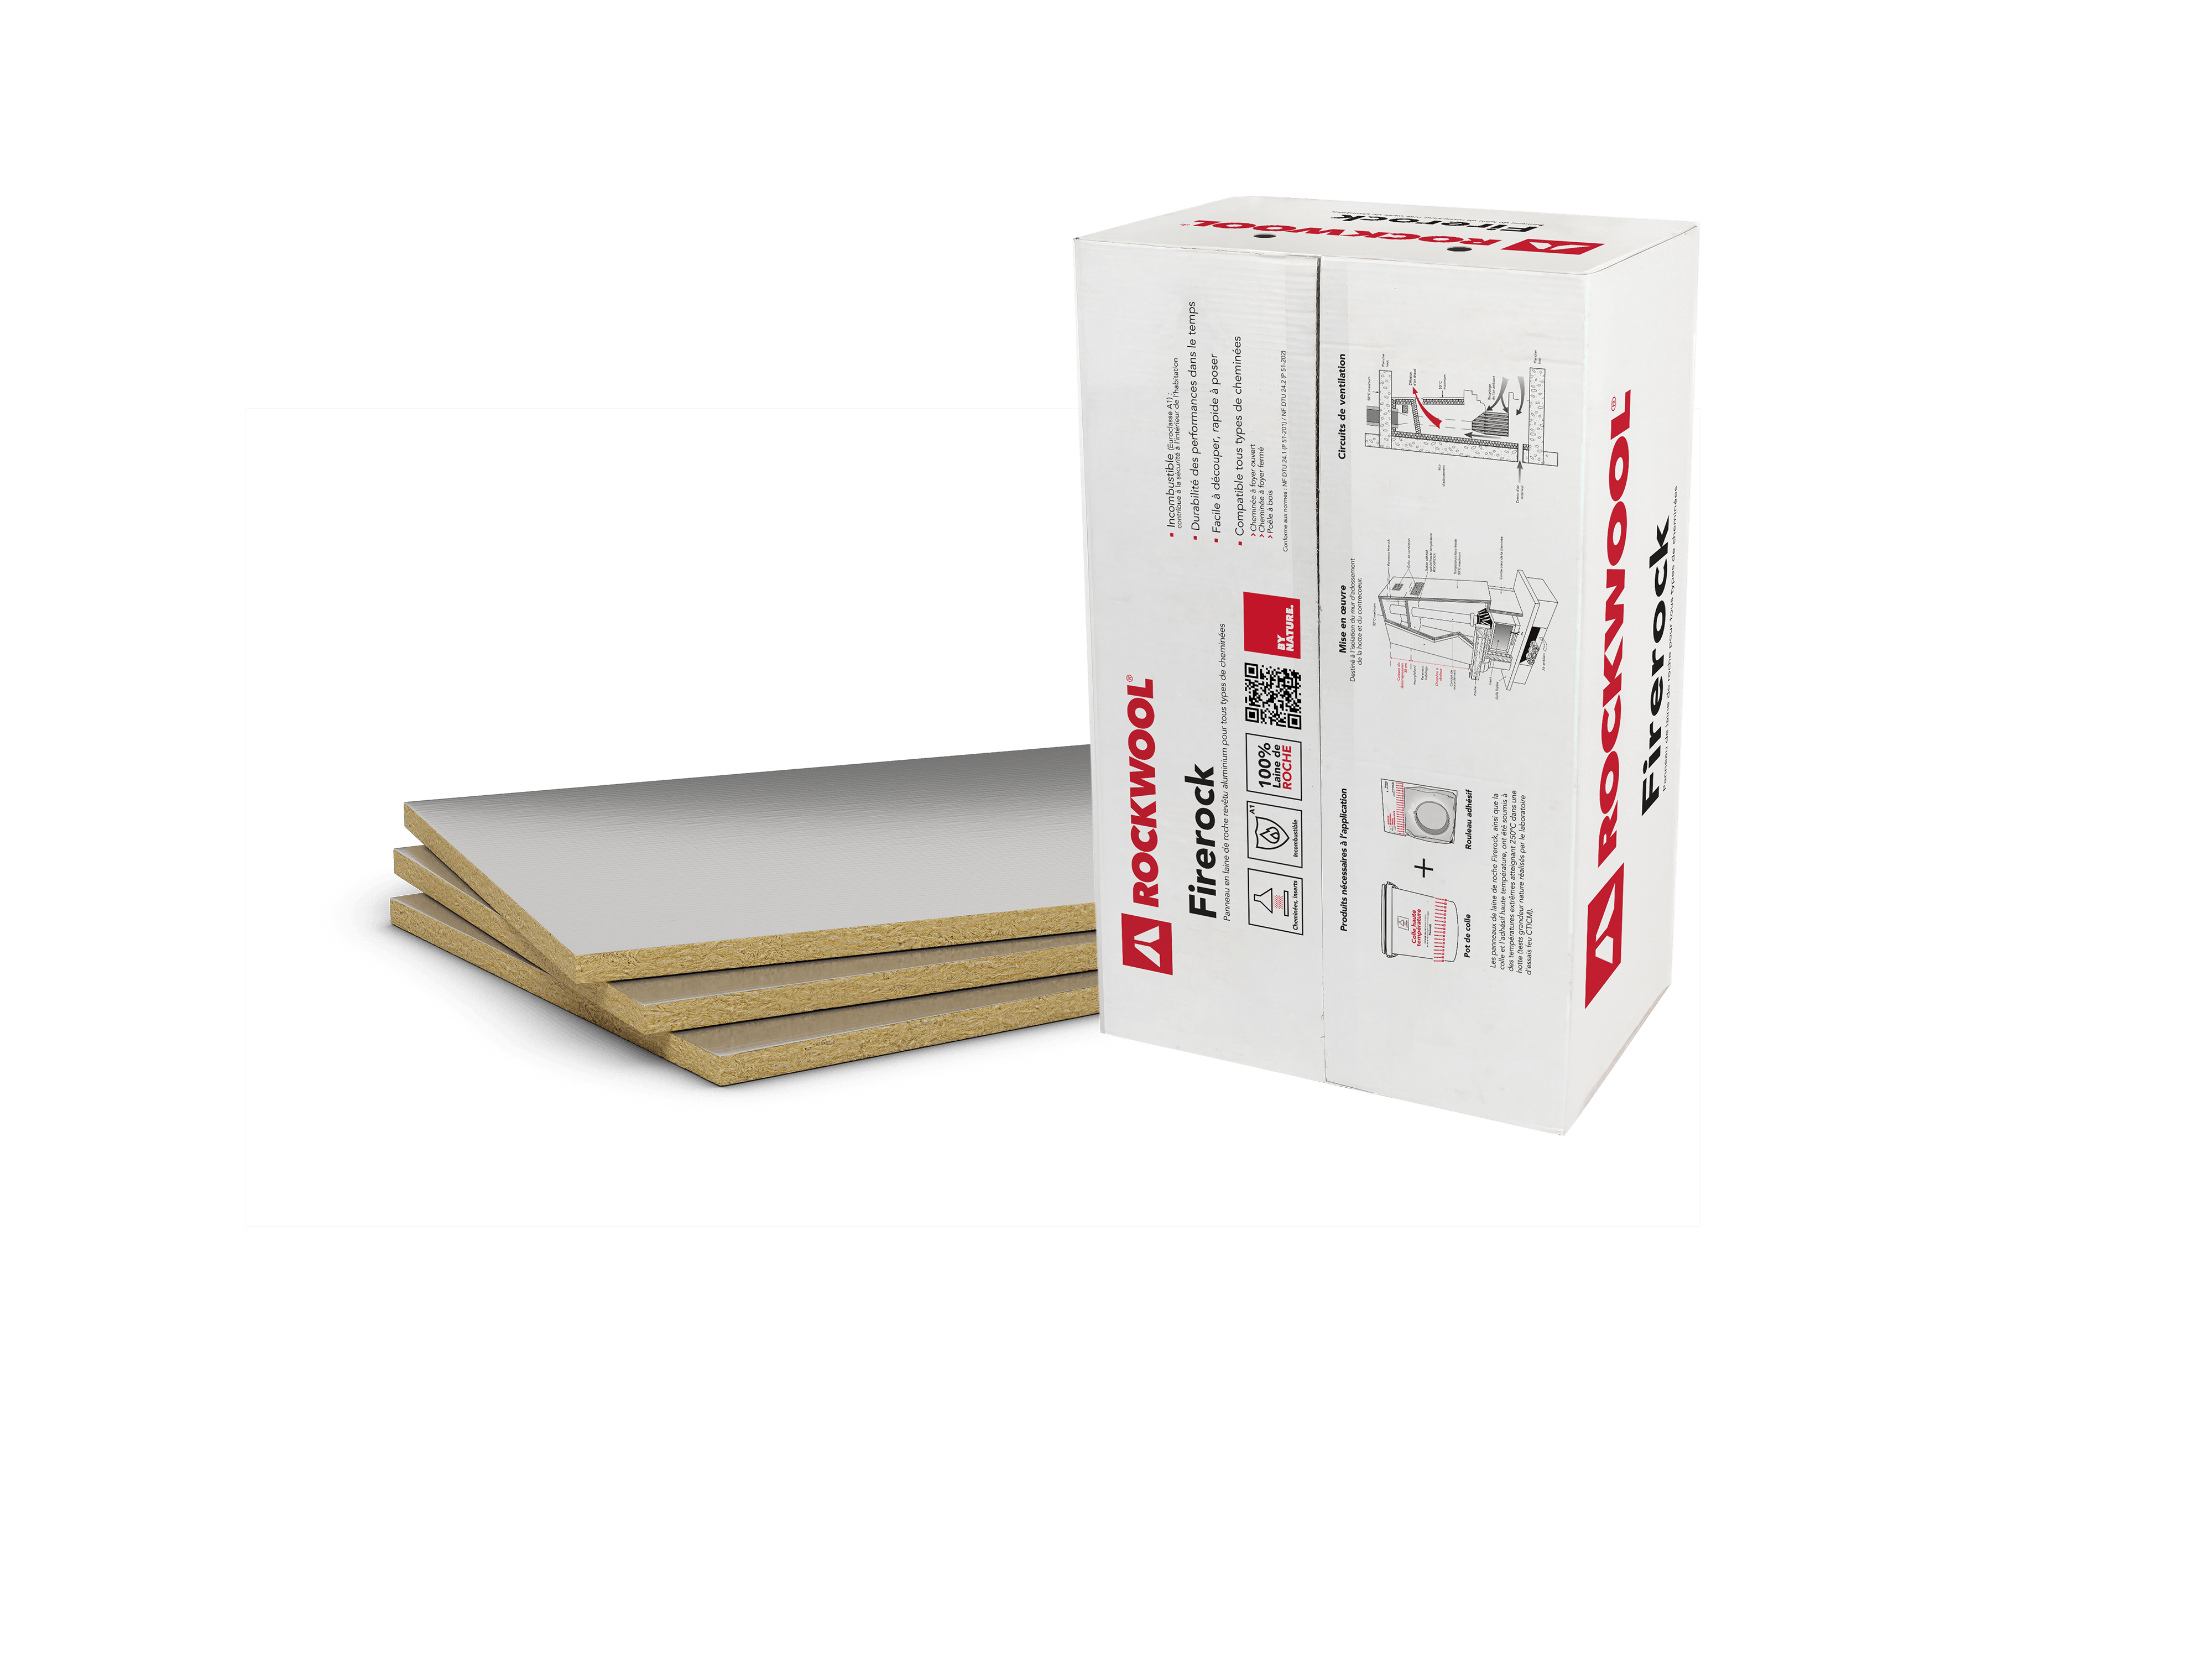 Rocflam : Protection thermique pour cheminée - Batiproduits